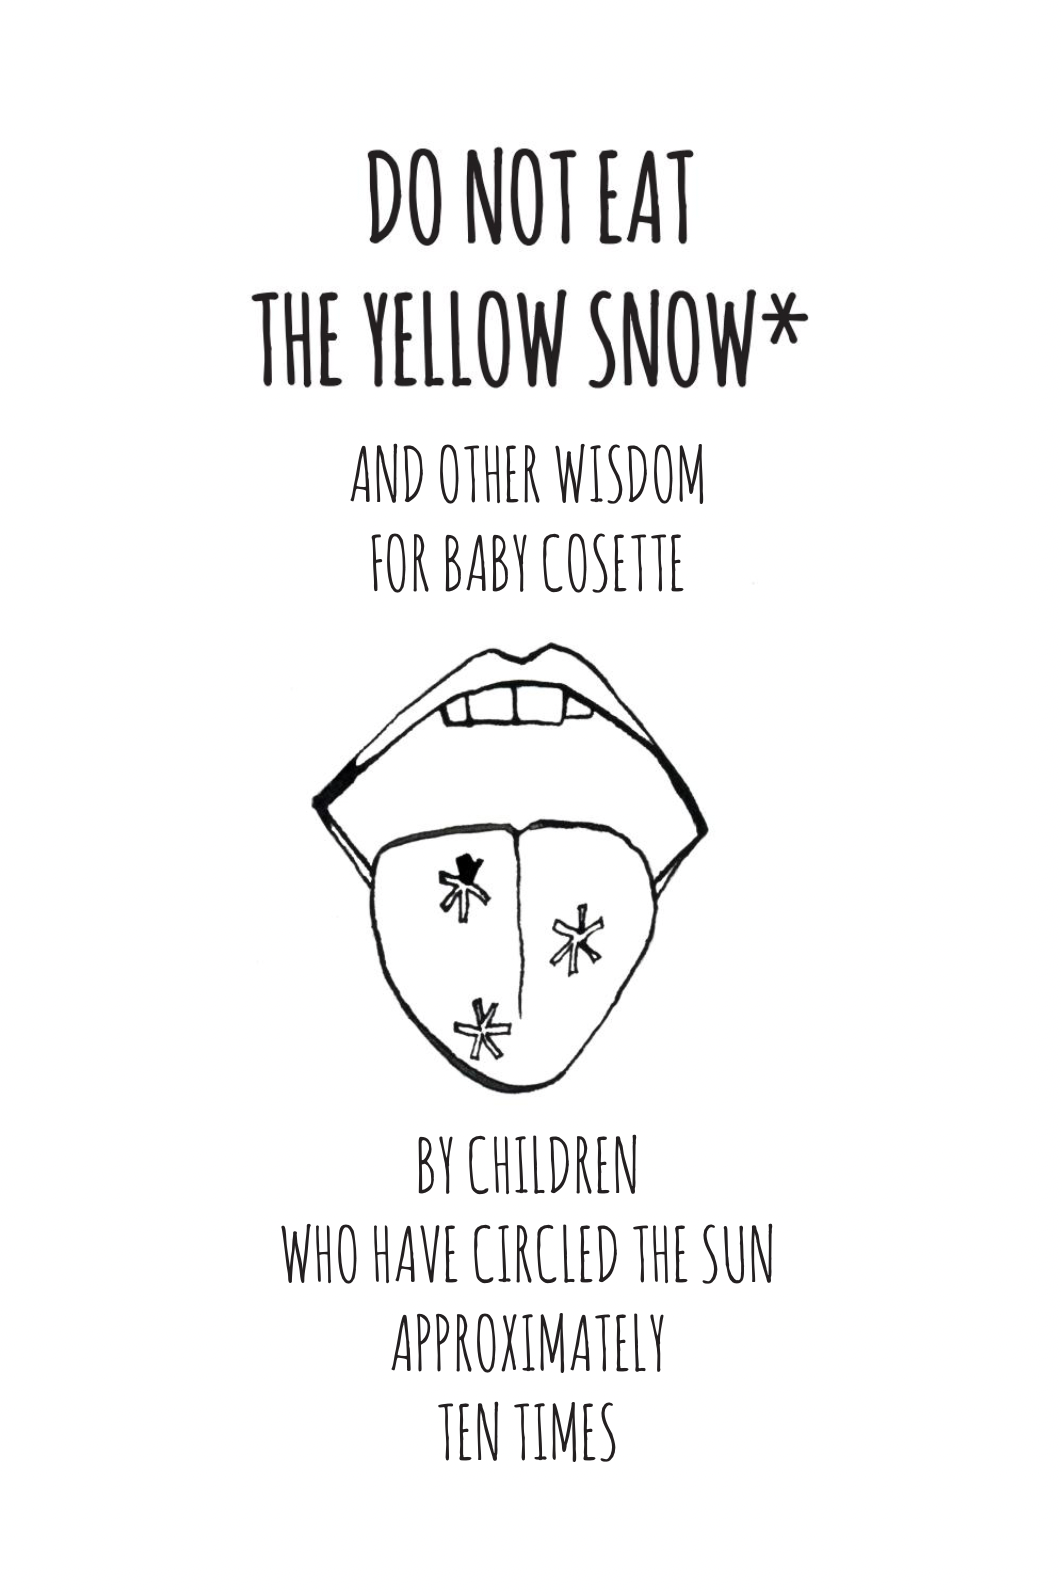 PORTFOLIO: Do Not Eat the Yellow Snow